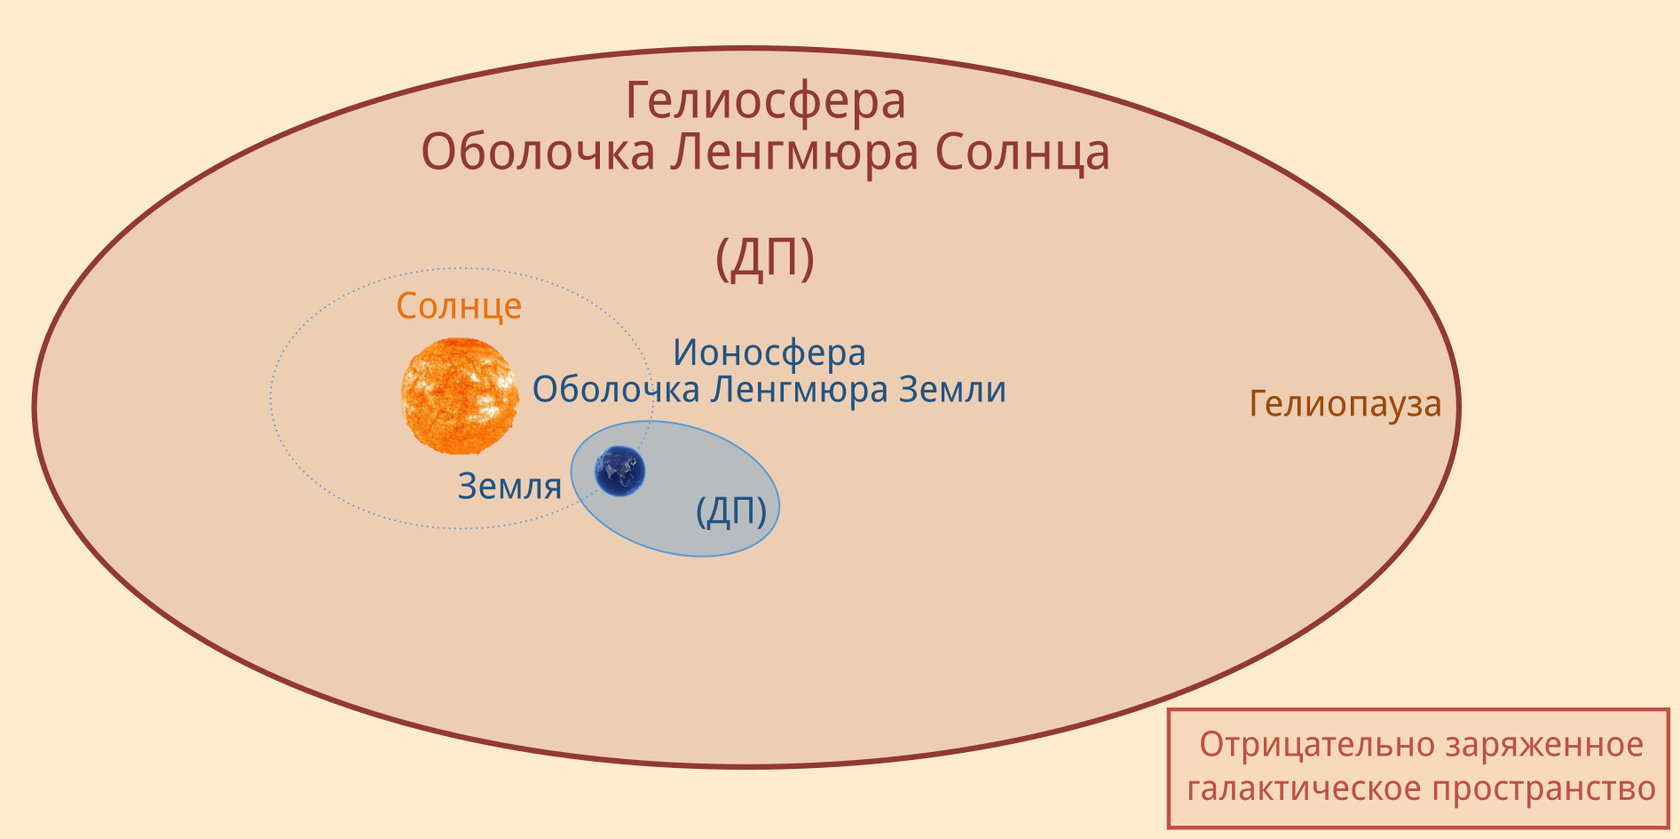 Рис. 11: Изображение Земли и её изолирующего пузыря (ионосферы) внутри гелиосферы (изолирующего пузыря Солнца). Масштаб не соблюдён.